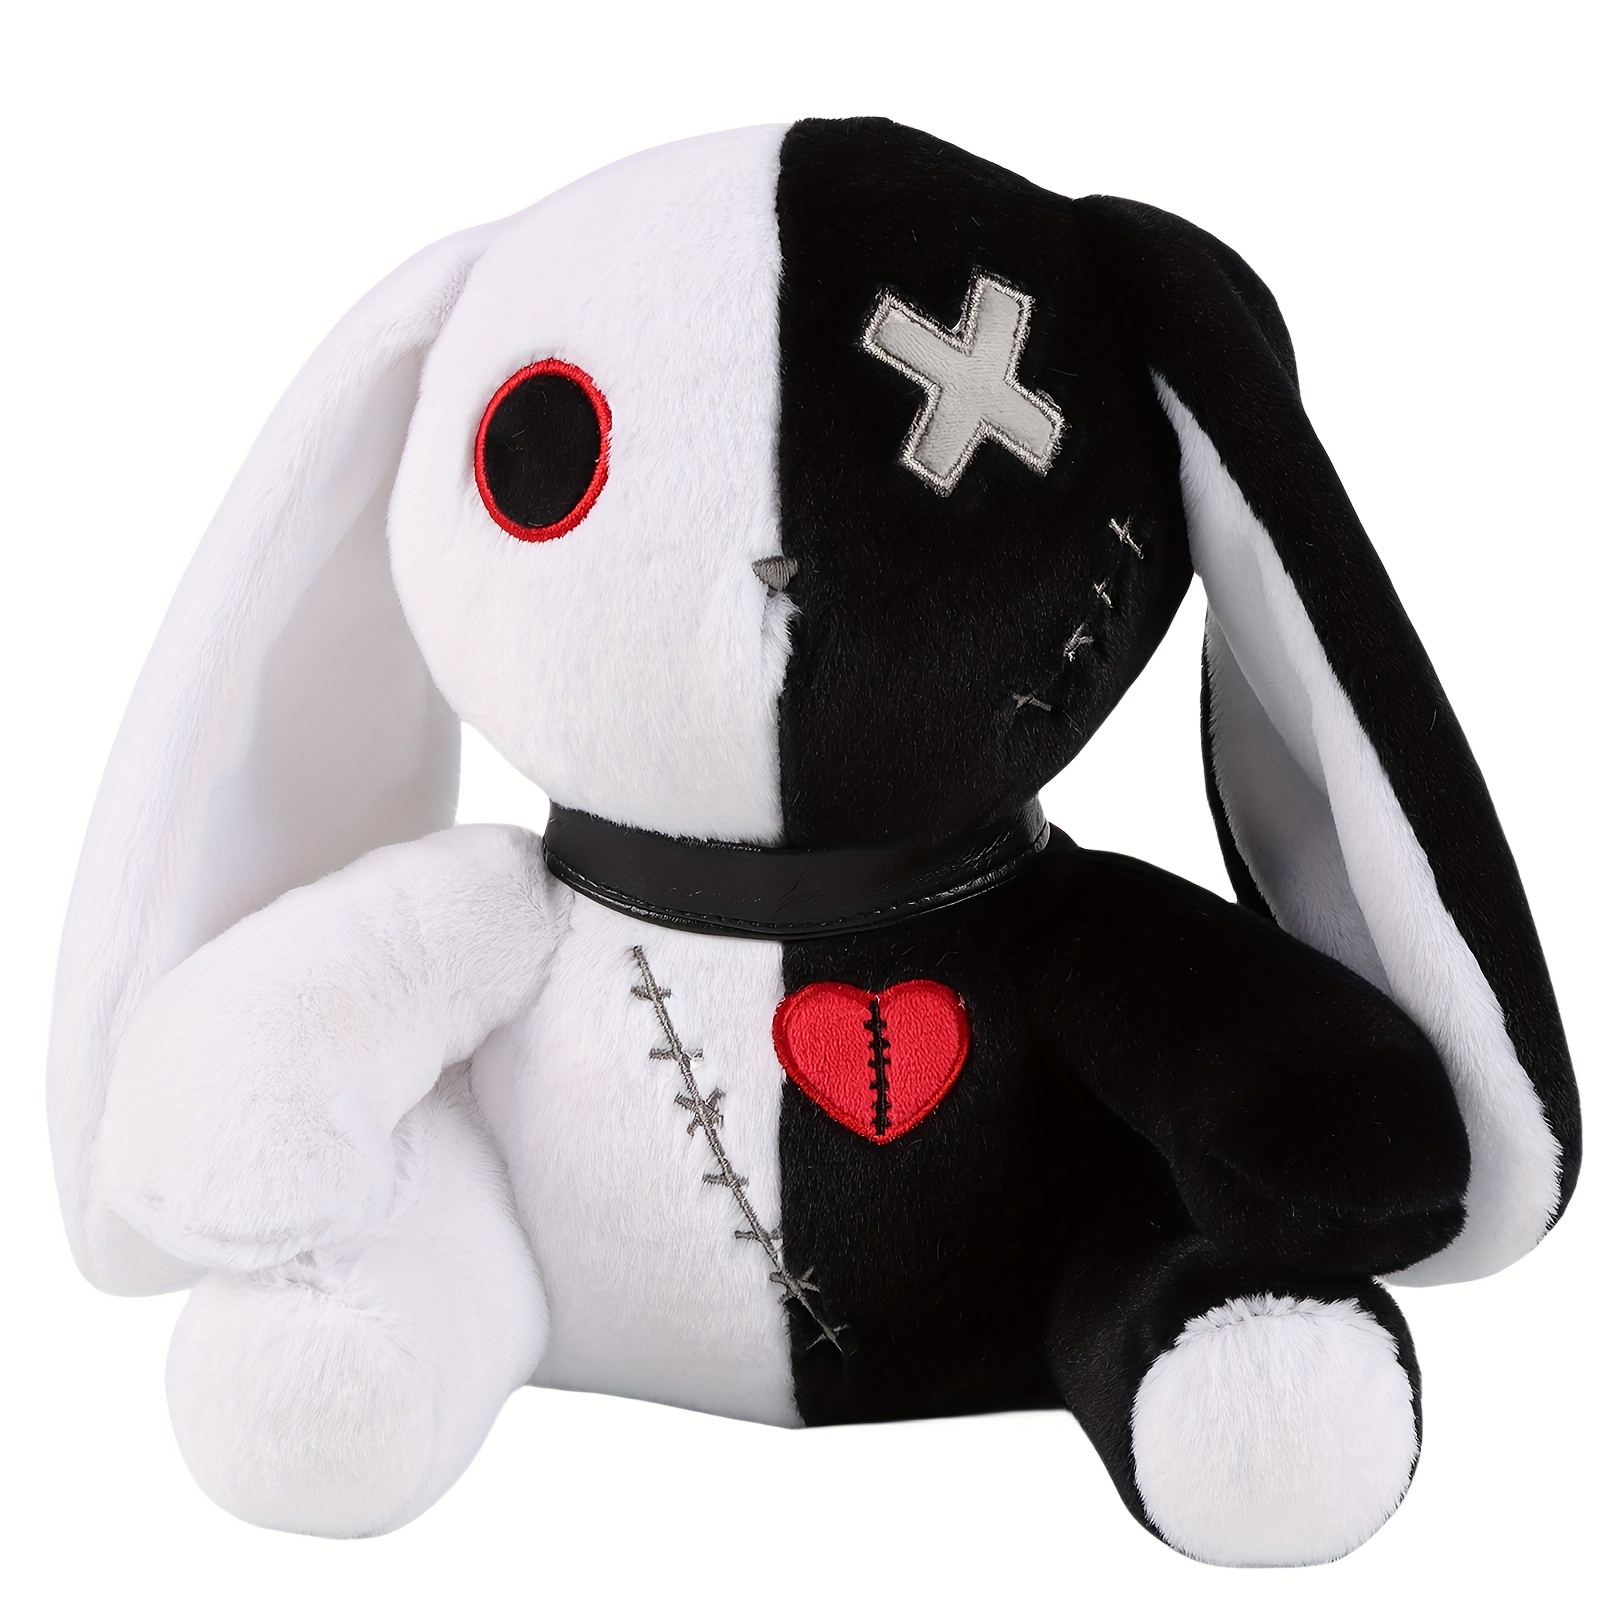 Creepy Bunny Plush Toy Creepy Cartoon Doll Cute Horror Dreadful Easter  Rabbit Huggable Pillows for Birthday Halloween greater